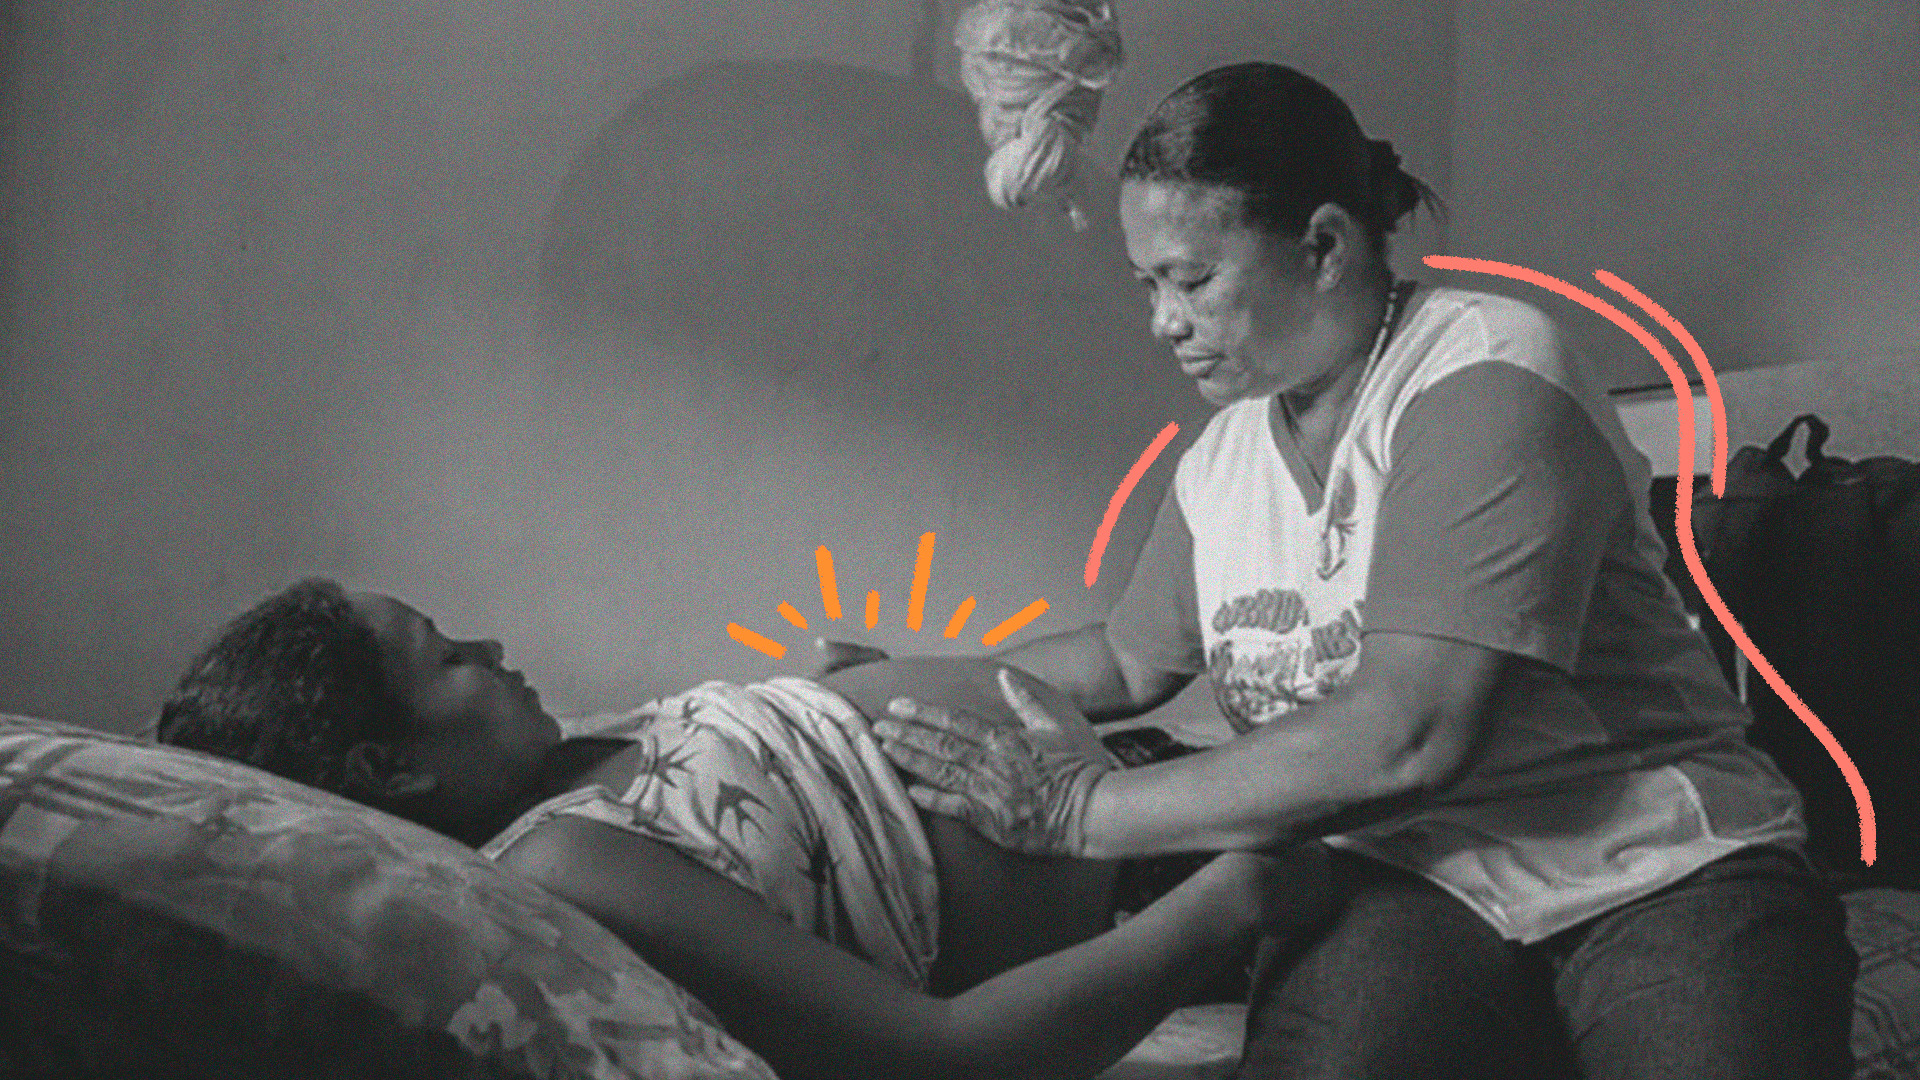 imagem para matéria sobre parteiras tradicionais mostra uma mulher mais velha sentada em uma cama tocando na barriga de uma mulher grávida que está deitada.